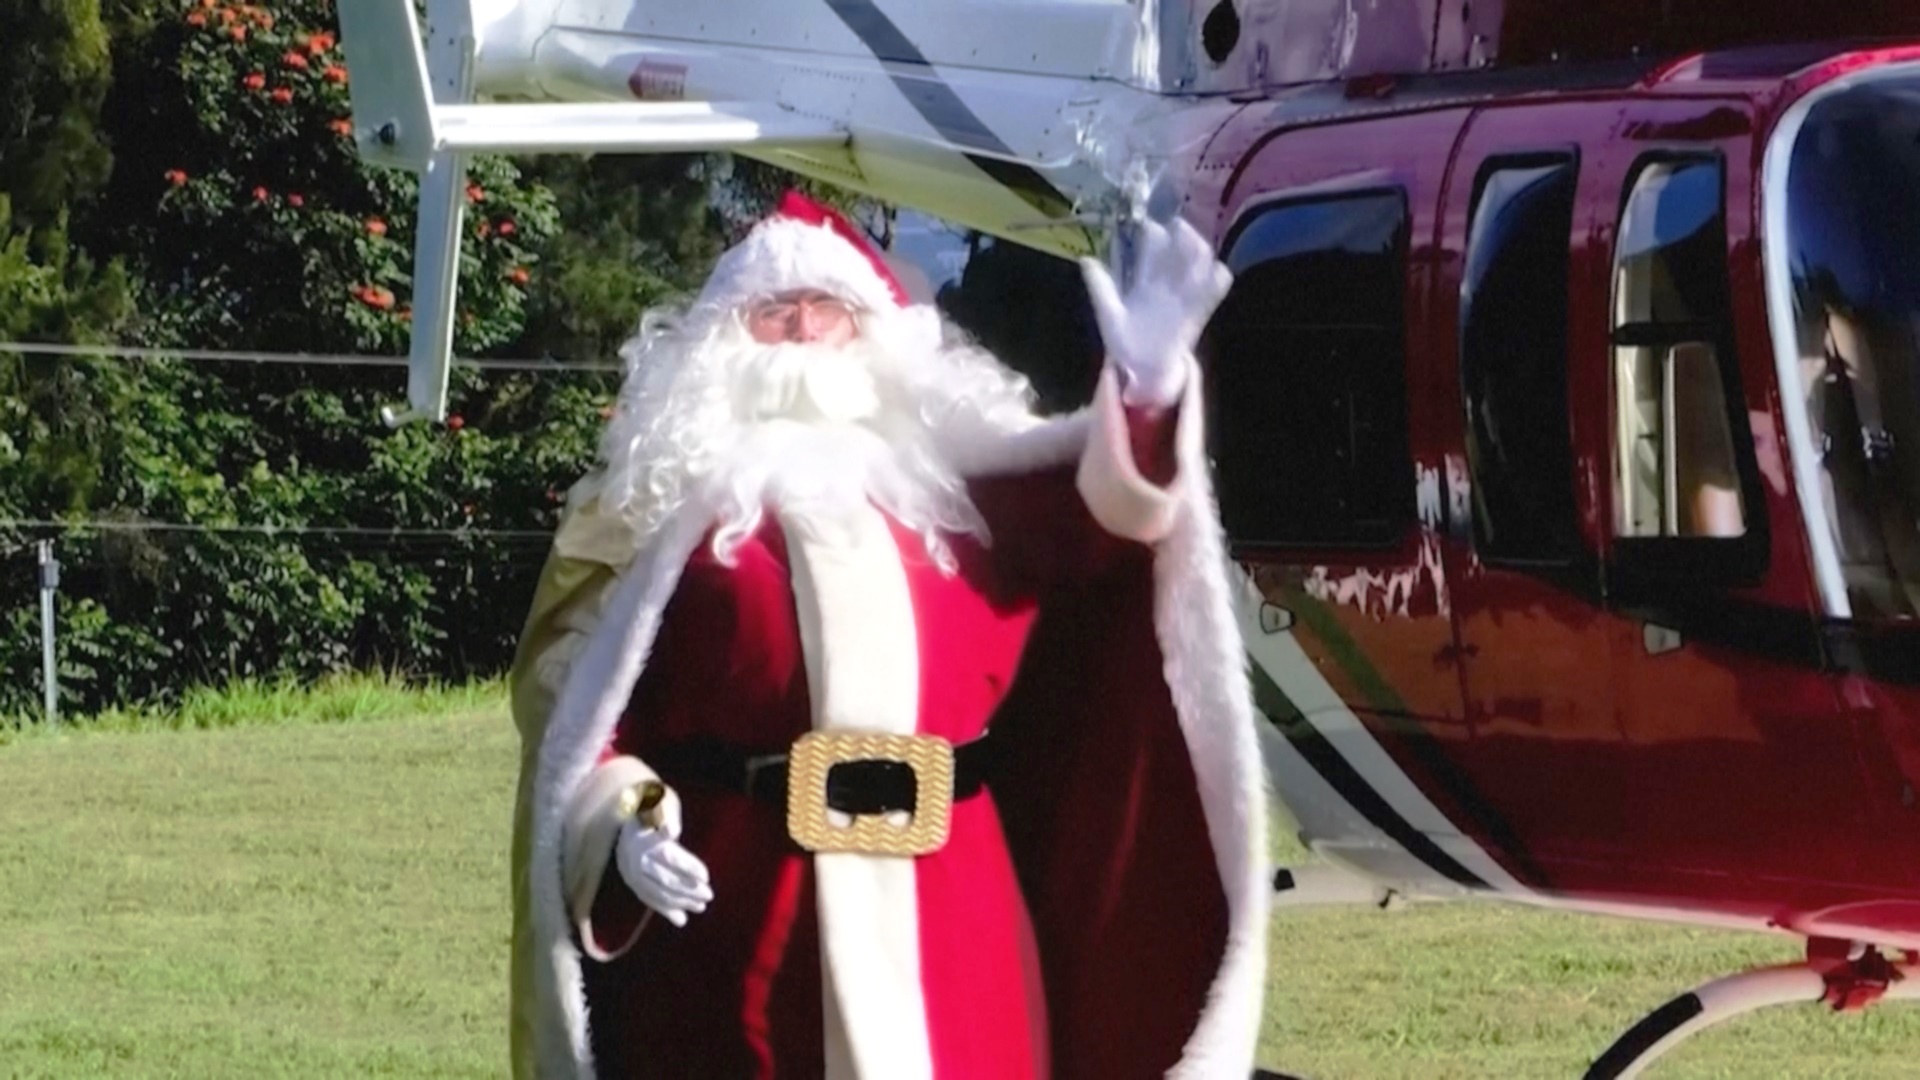 Прилетел на вертолёте: Санта-Клаус навестил больных детей в приюте в Гватемале